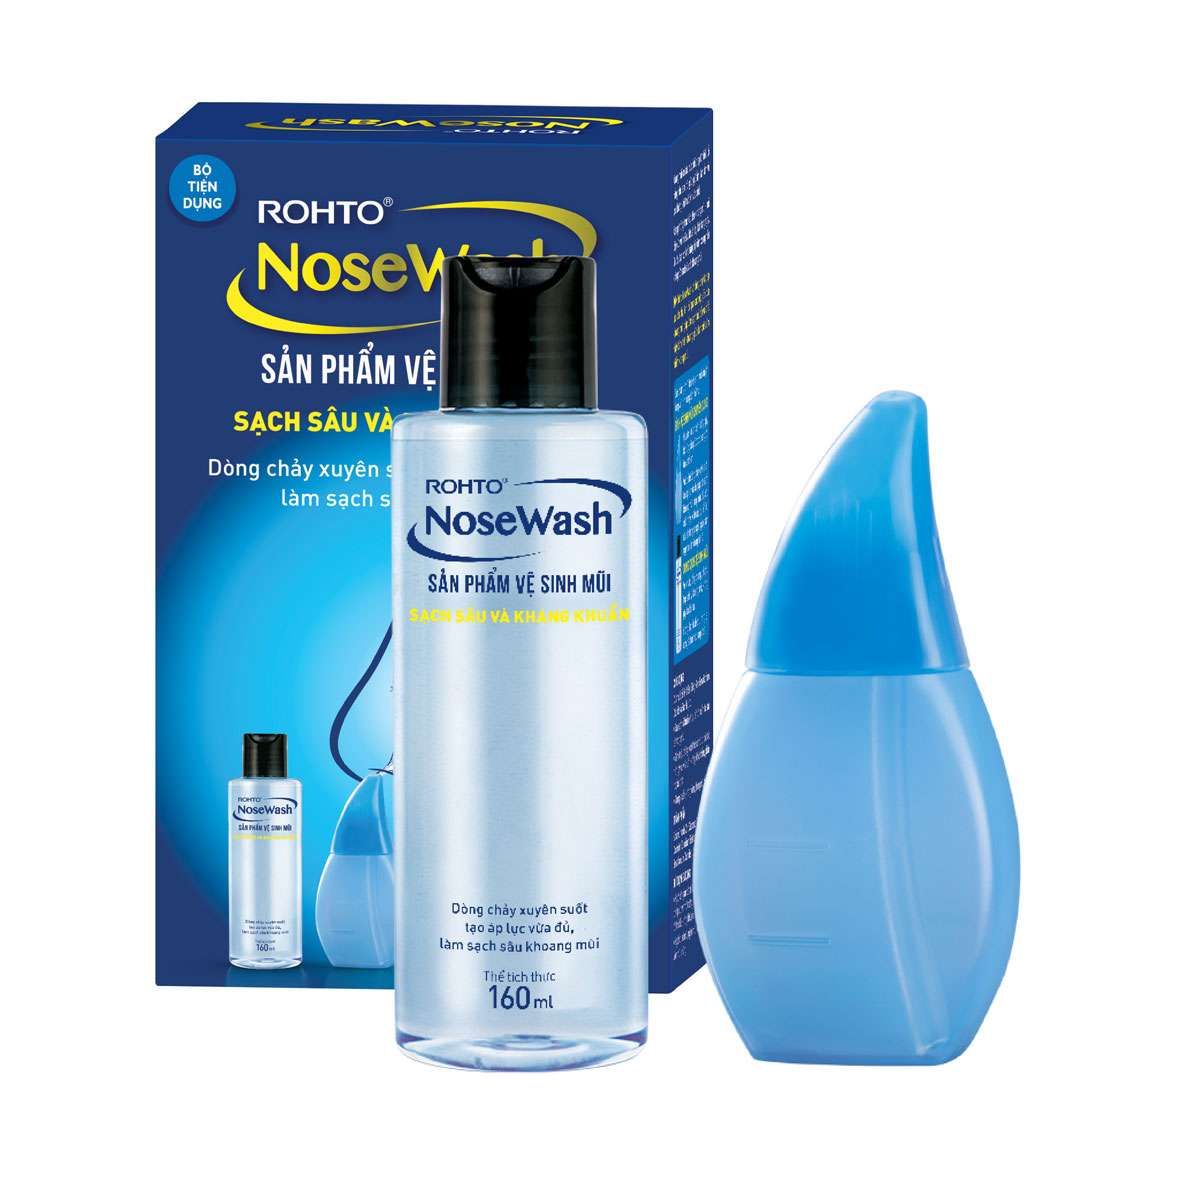 Bộ sản phẩm rửa mũi tiện dụng Rohto NoseWash Miniset (1 bình vệ sinh mũi Easy Shower + 1 chai dung dịch 160ml)